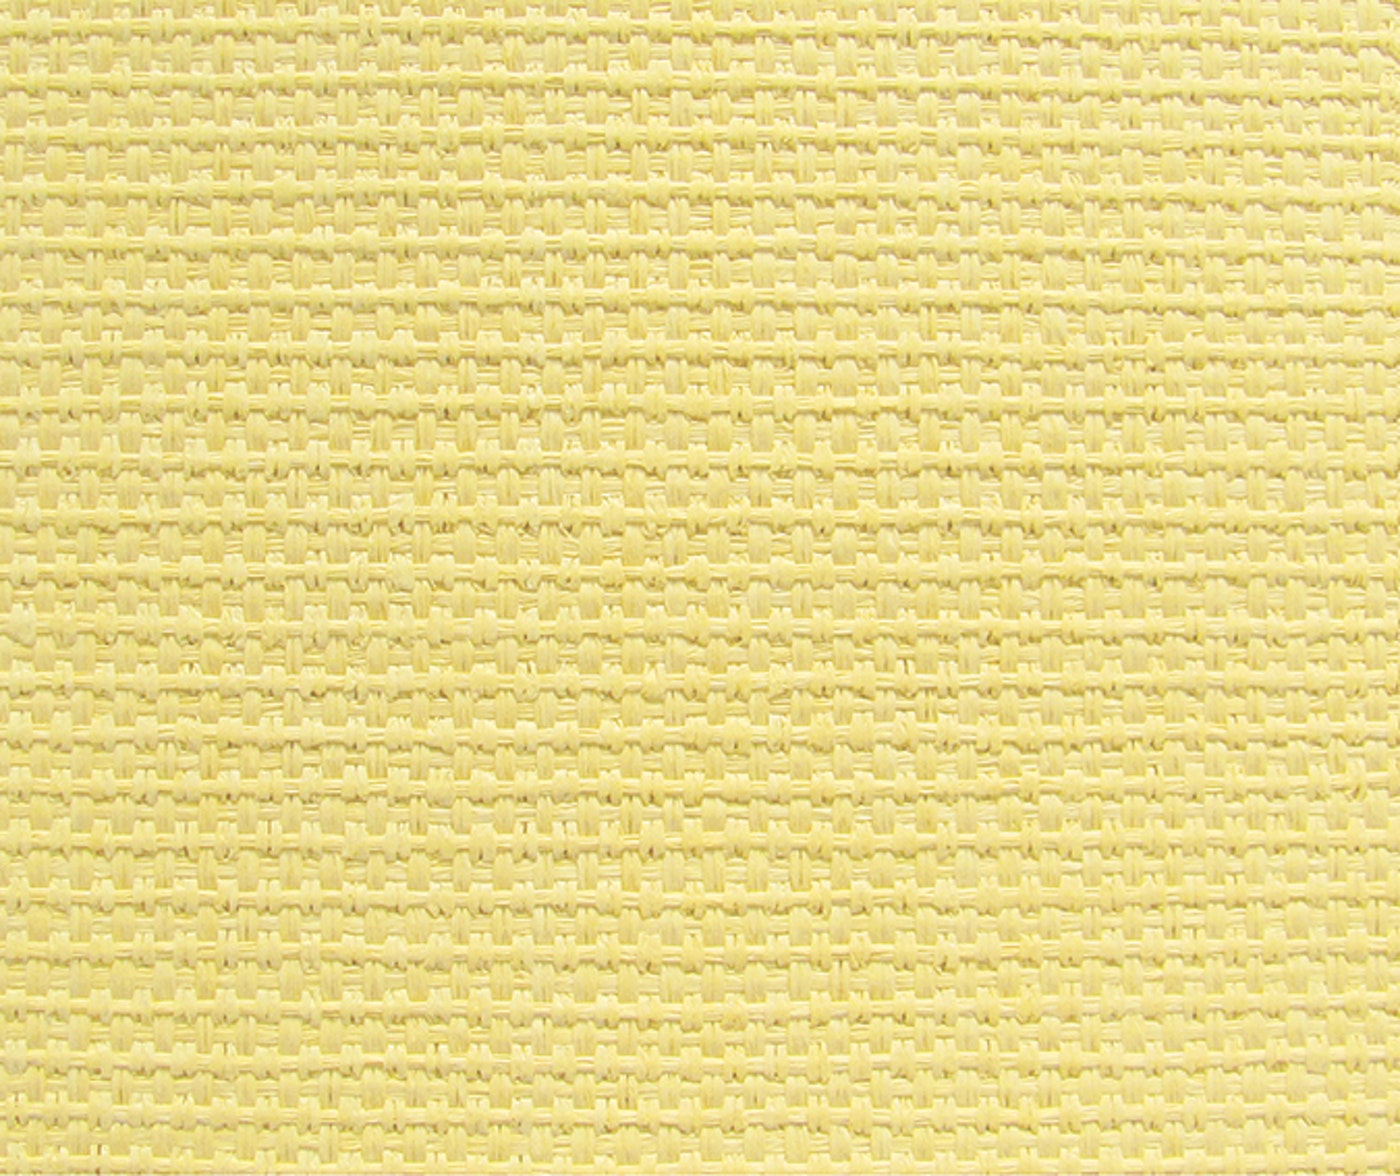 Papel Textura Natural / Rafia Paper (10411048)